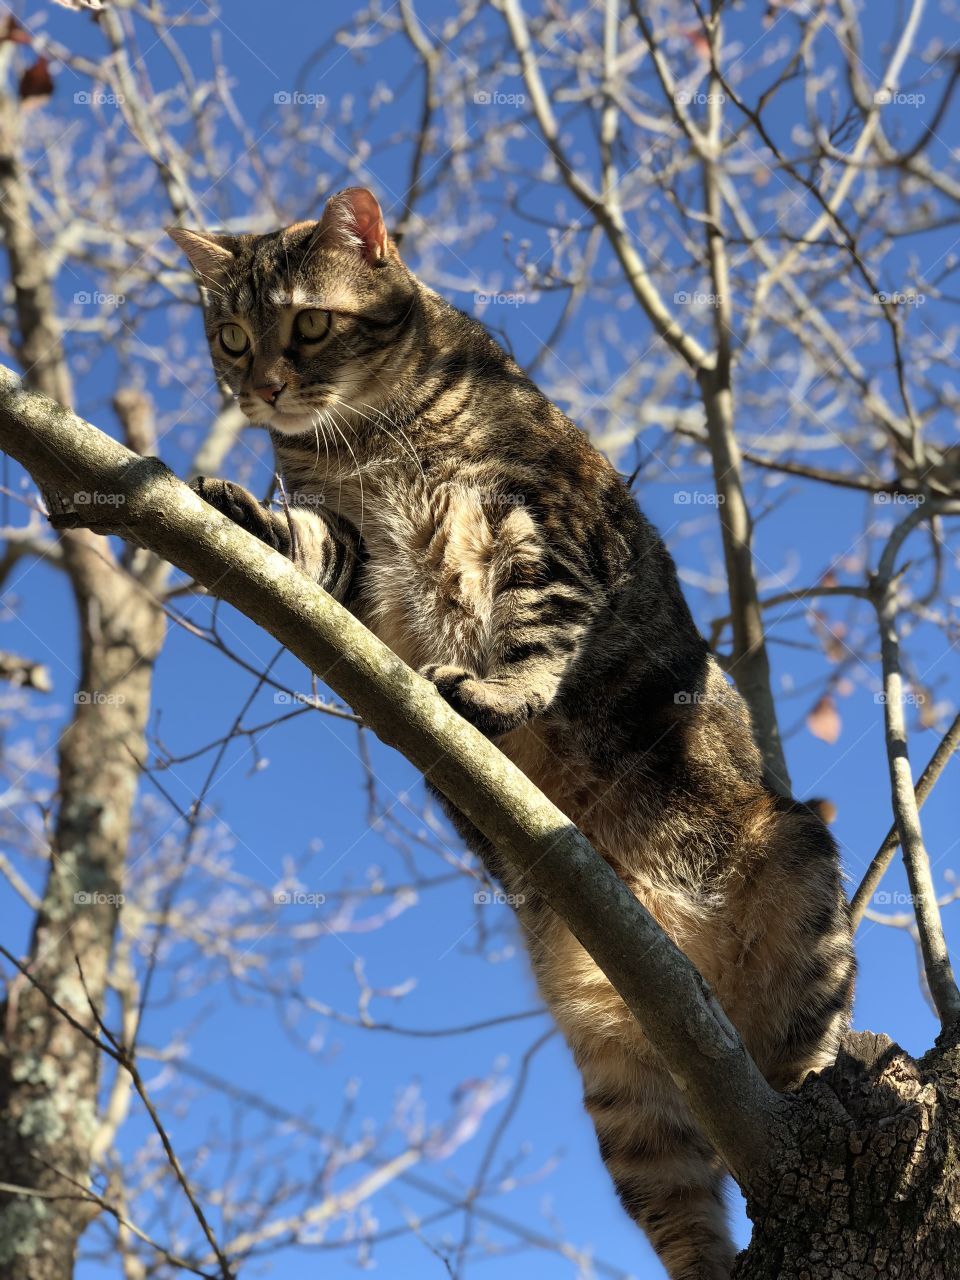 Cat climbing tree